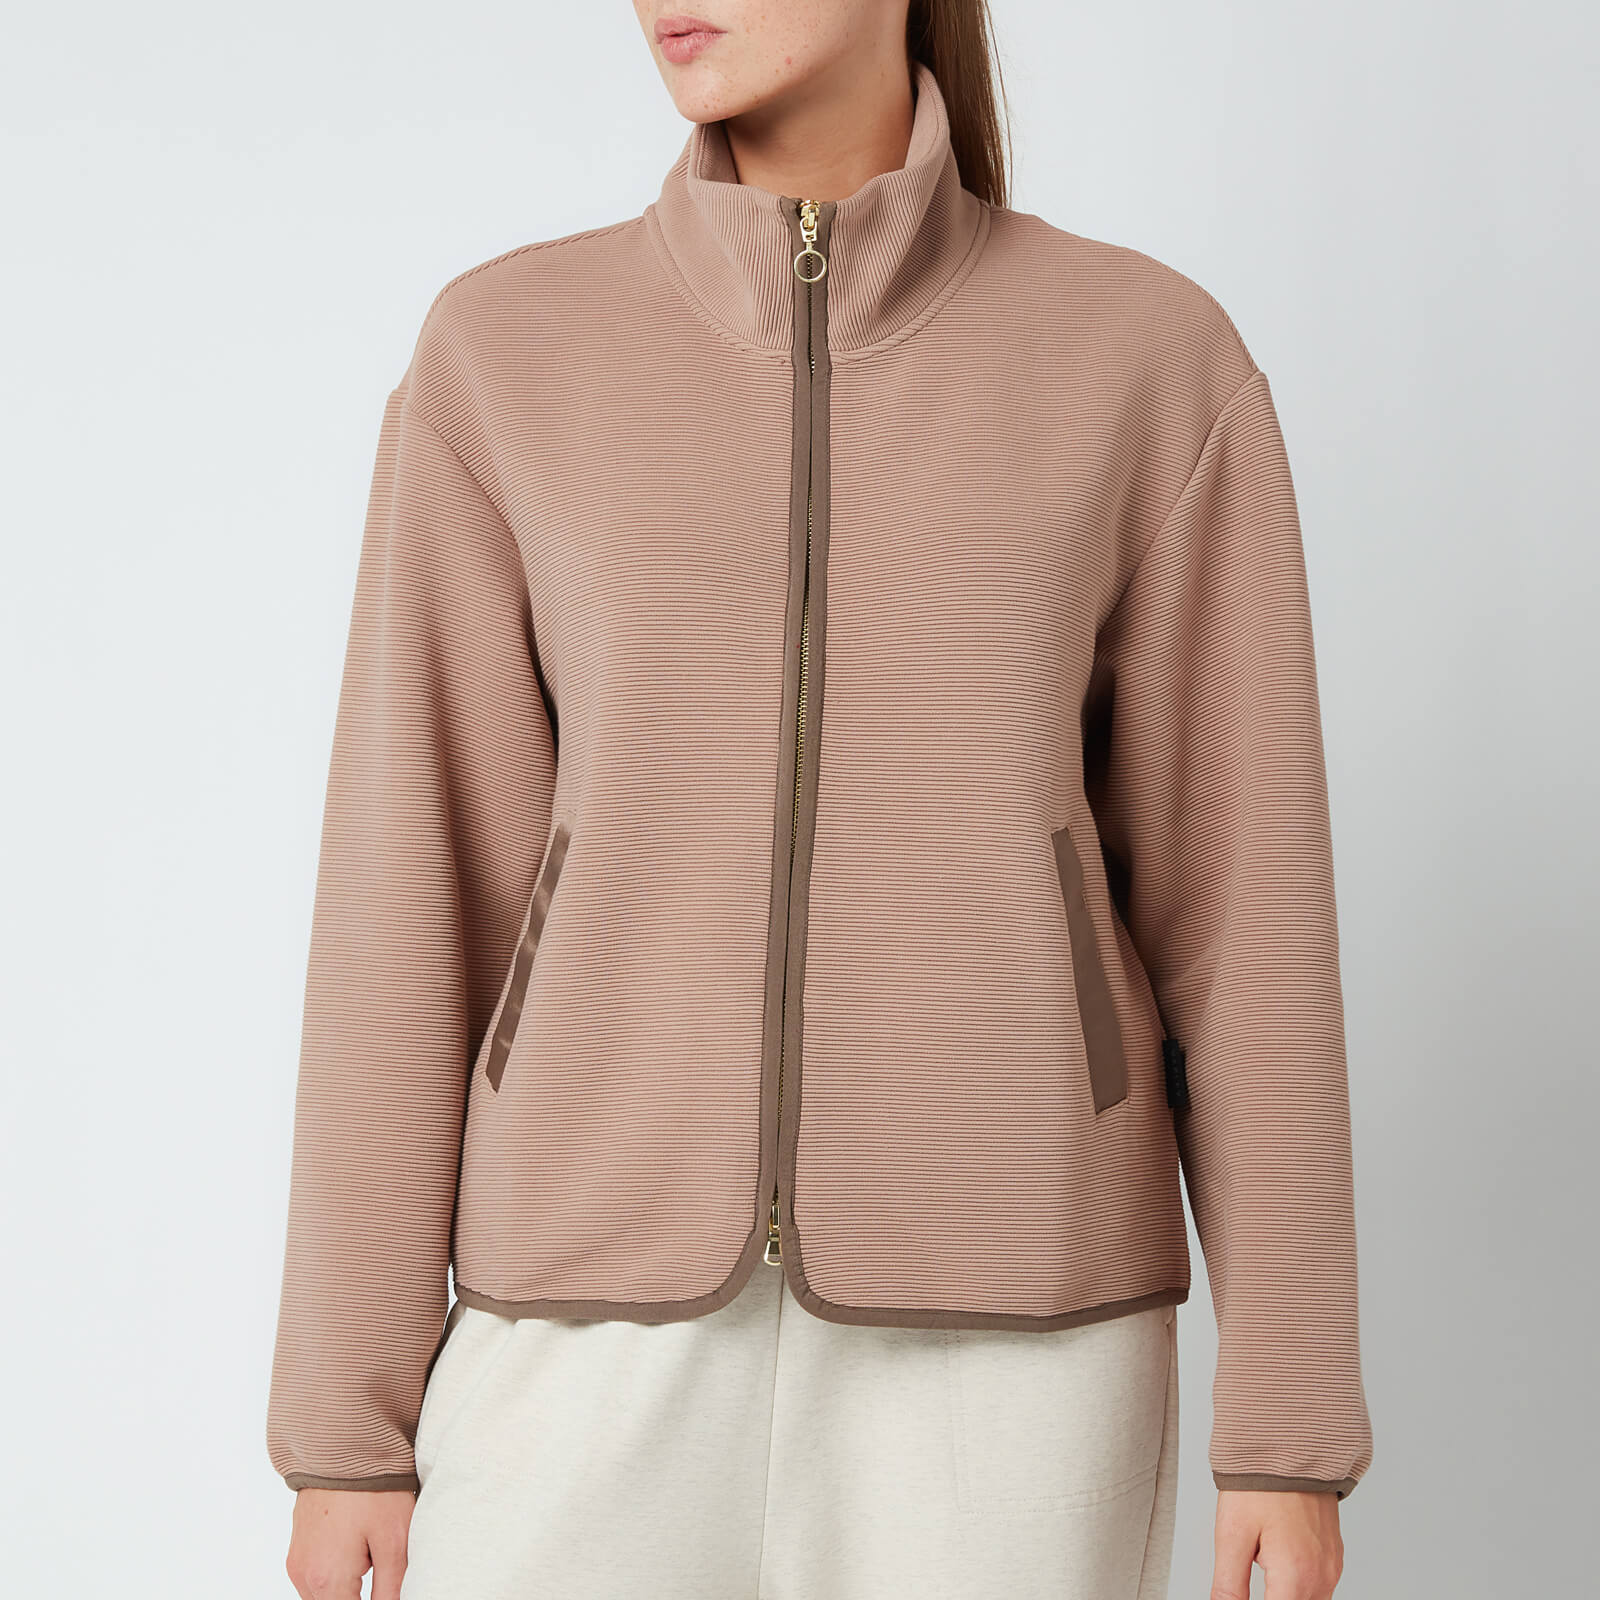 Varley Women's Berendo Fleece Jacket - Portabella - L